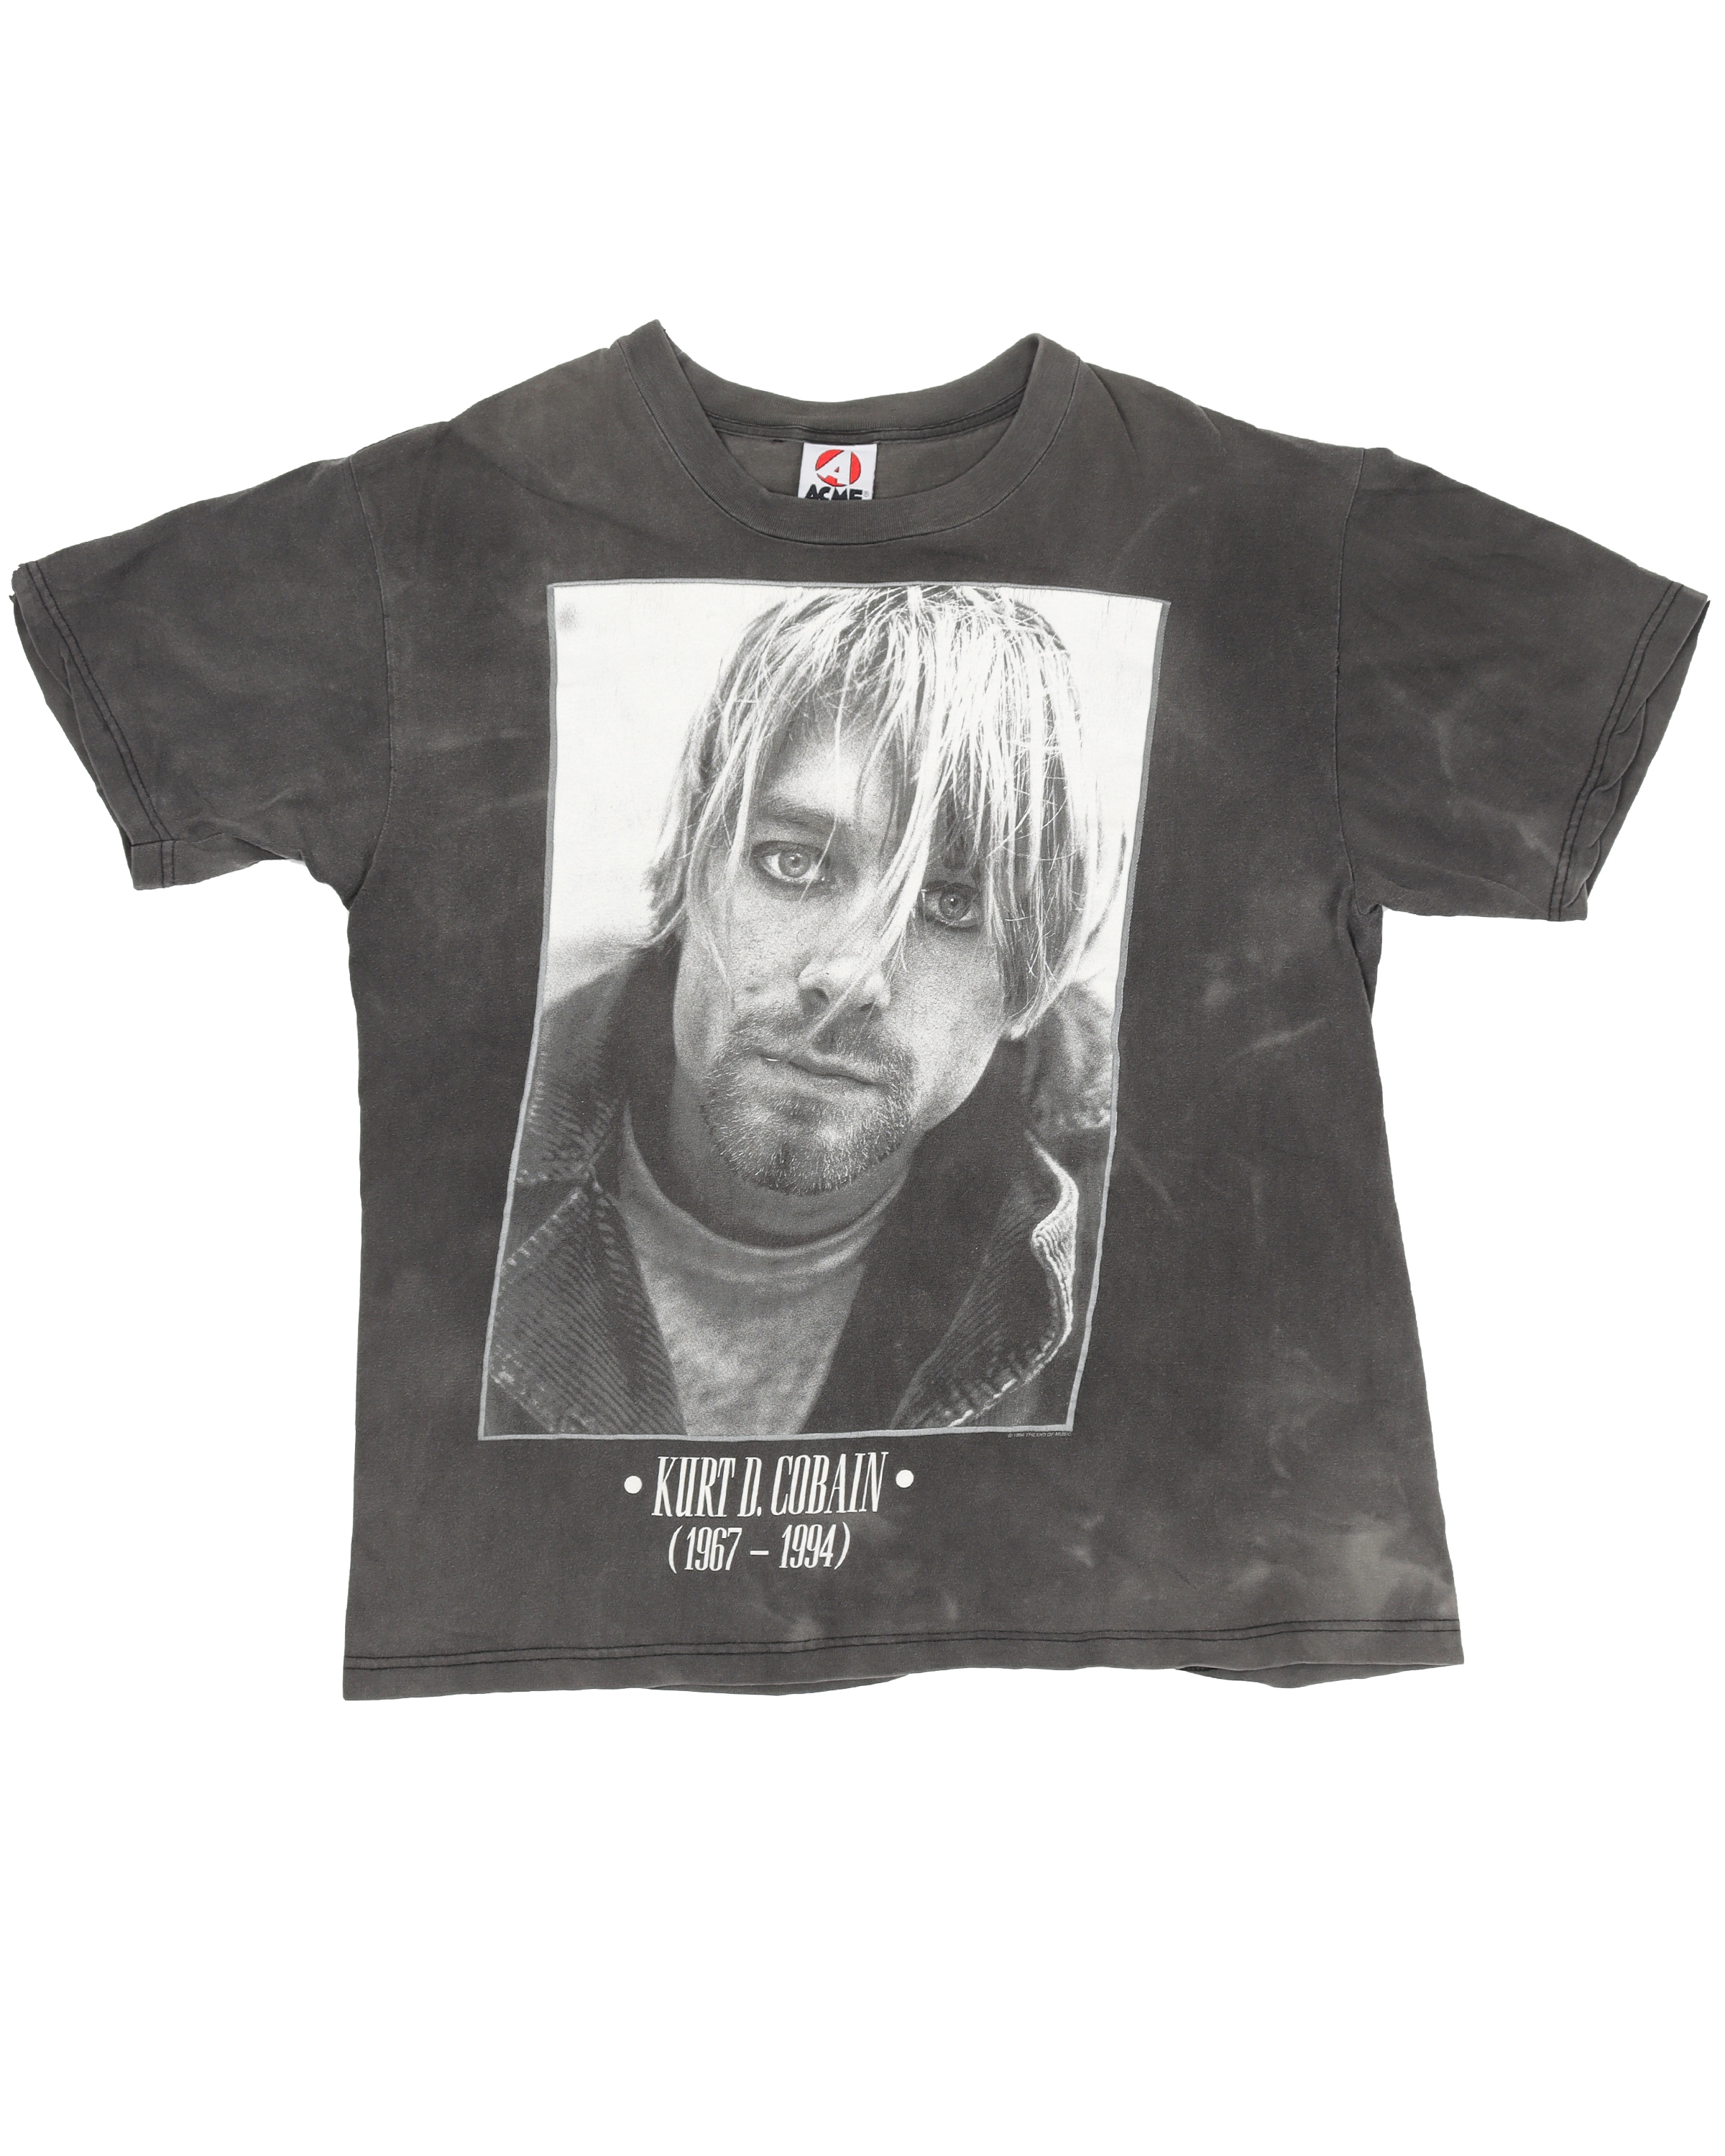 Kurt Cobain 1967-1994 Graphic Print T-Shirt